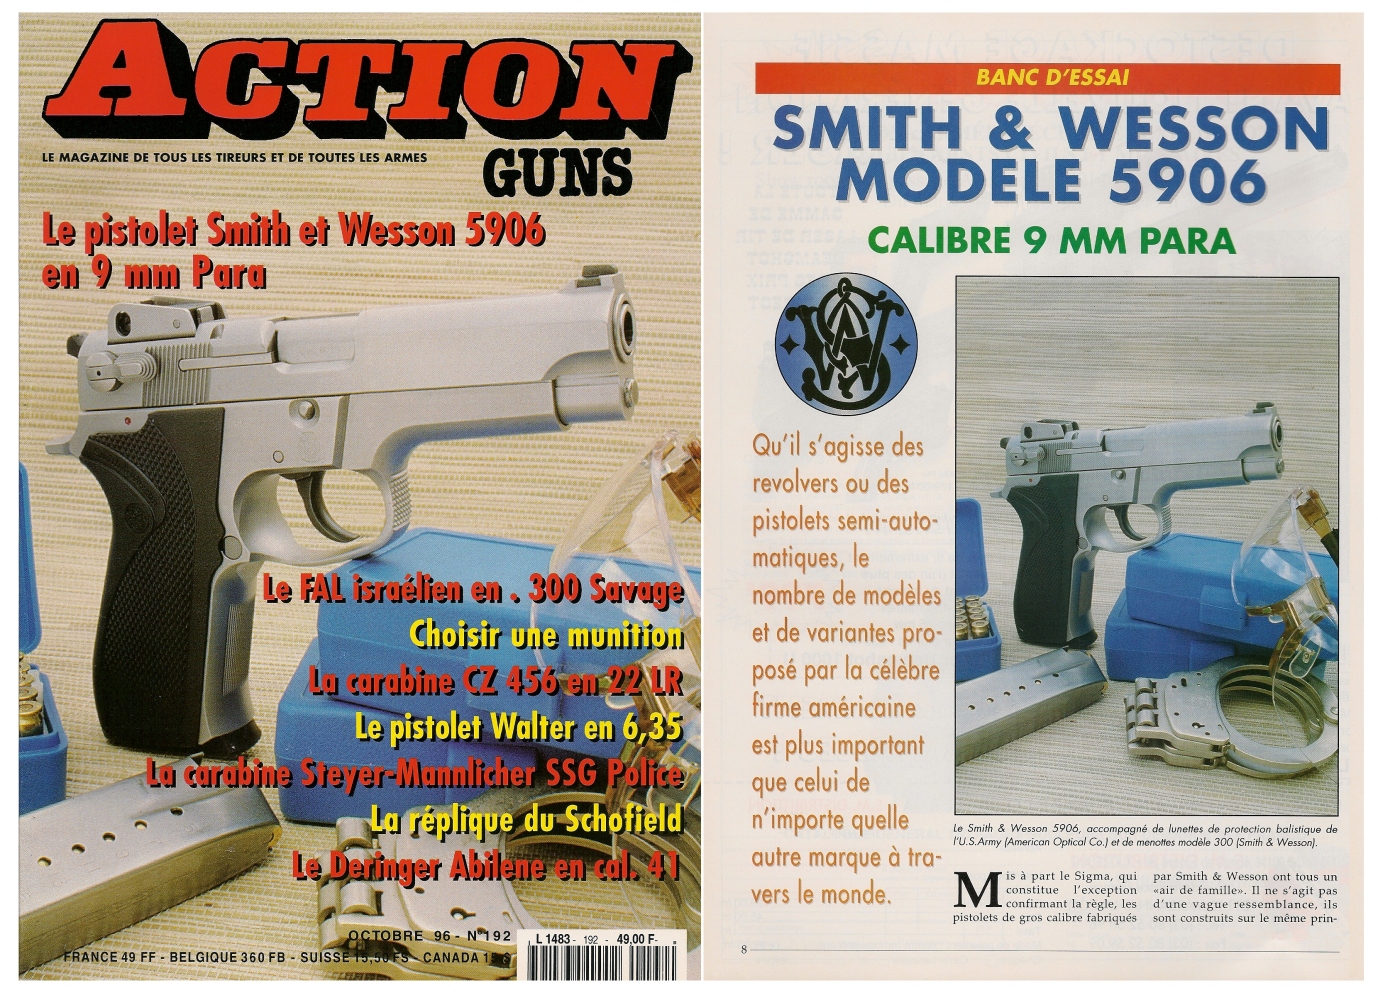 Le banc d’essai du pistolet Smith & Wesson modèle 5906 a été publié sur 7 pages dans le magazine Action Guns n°192 (octobre 1996). 